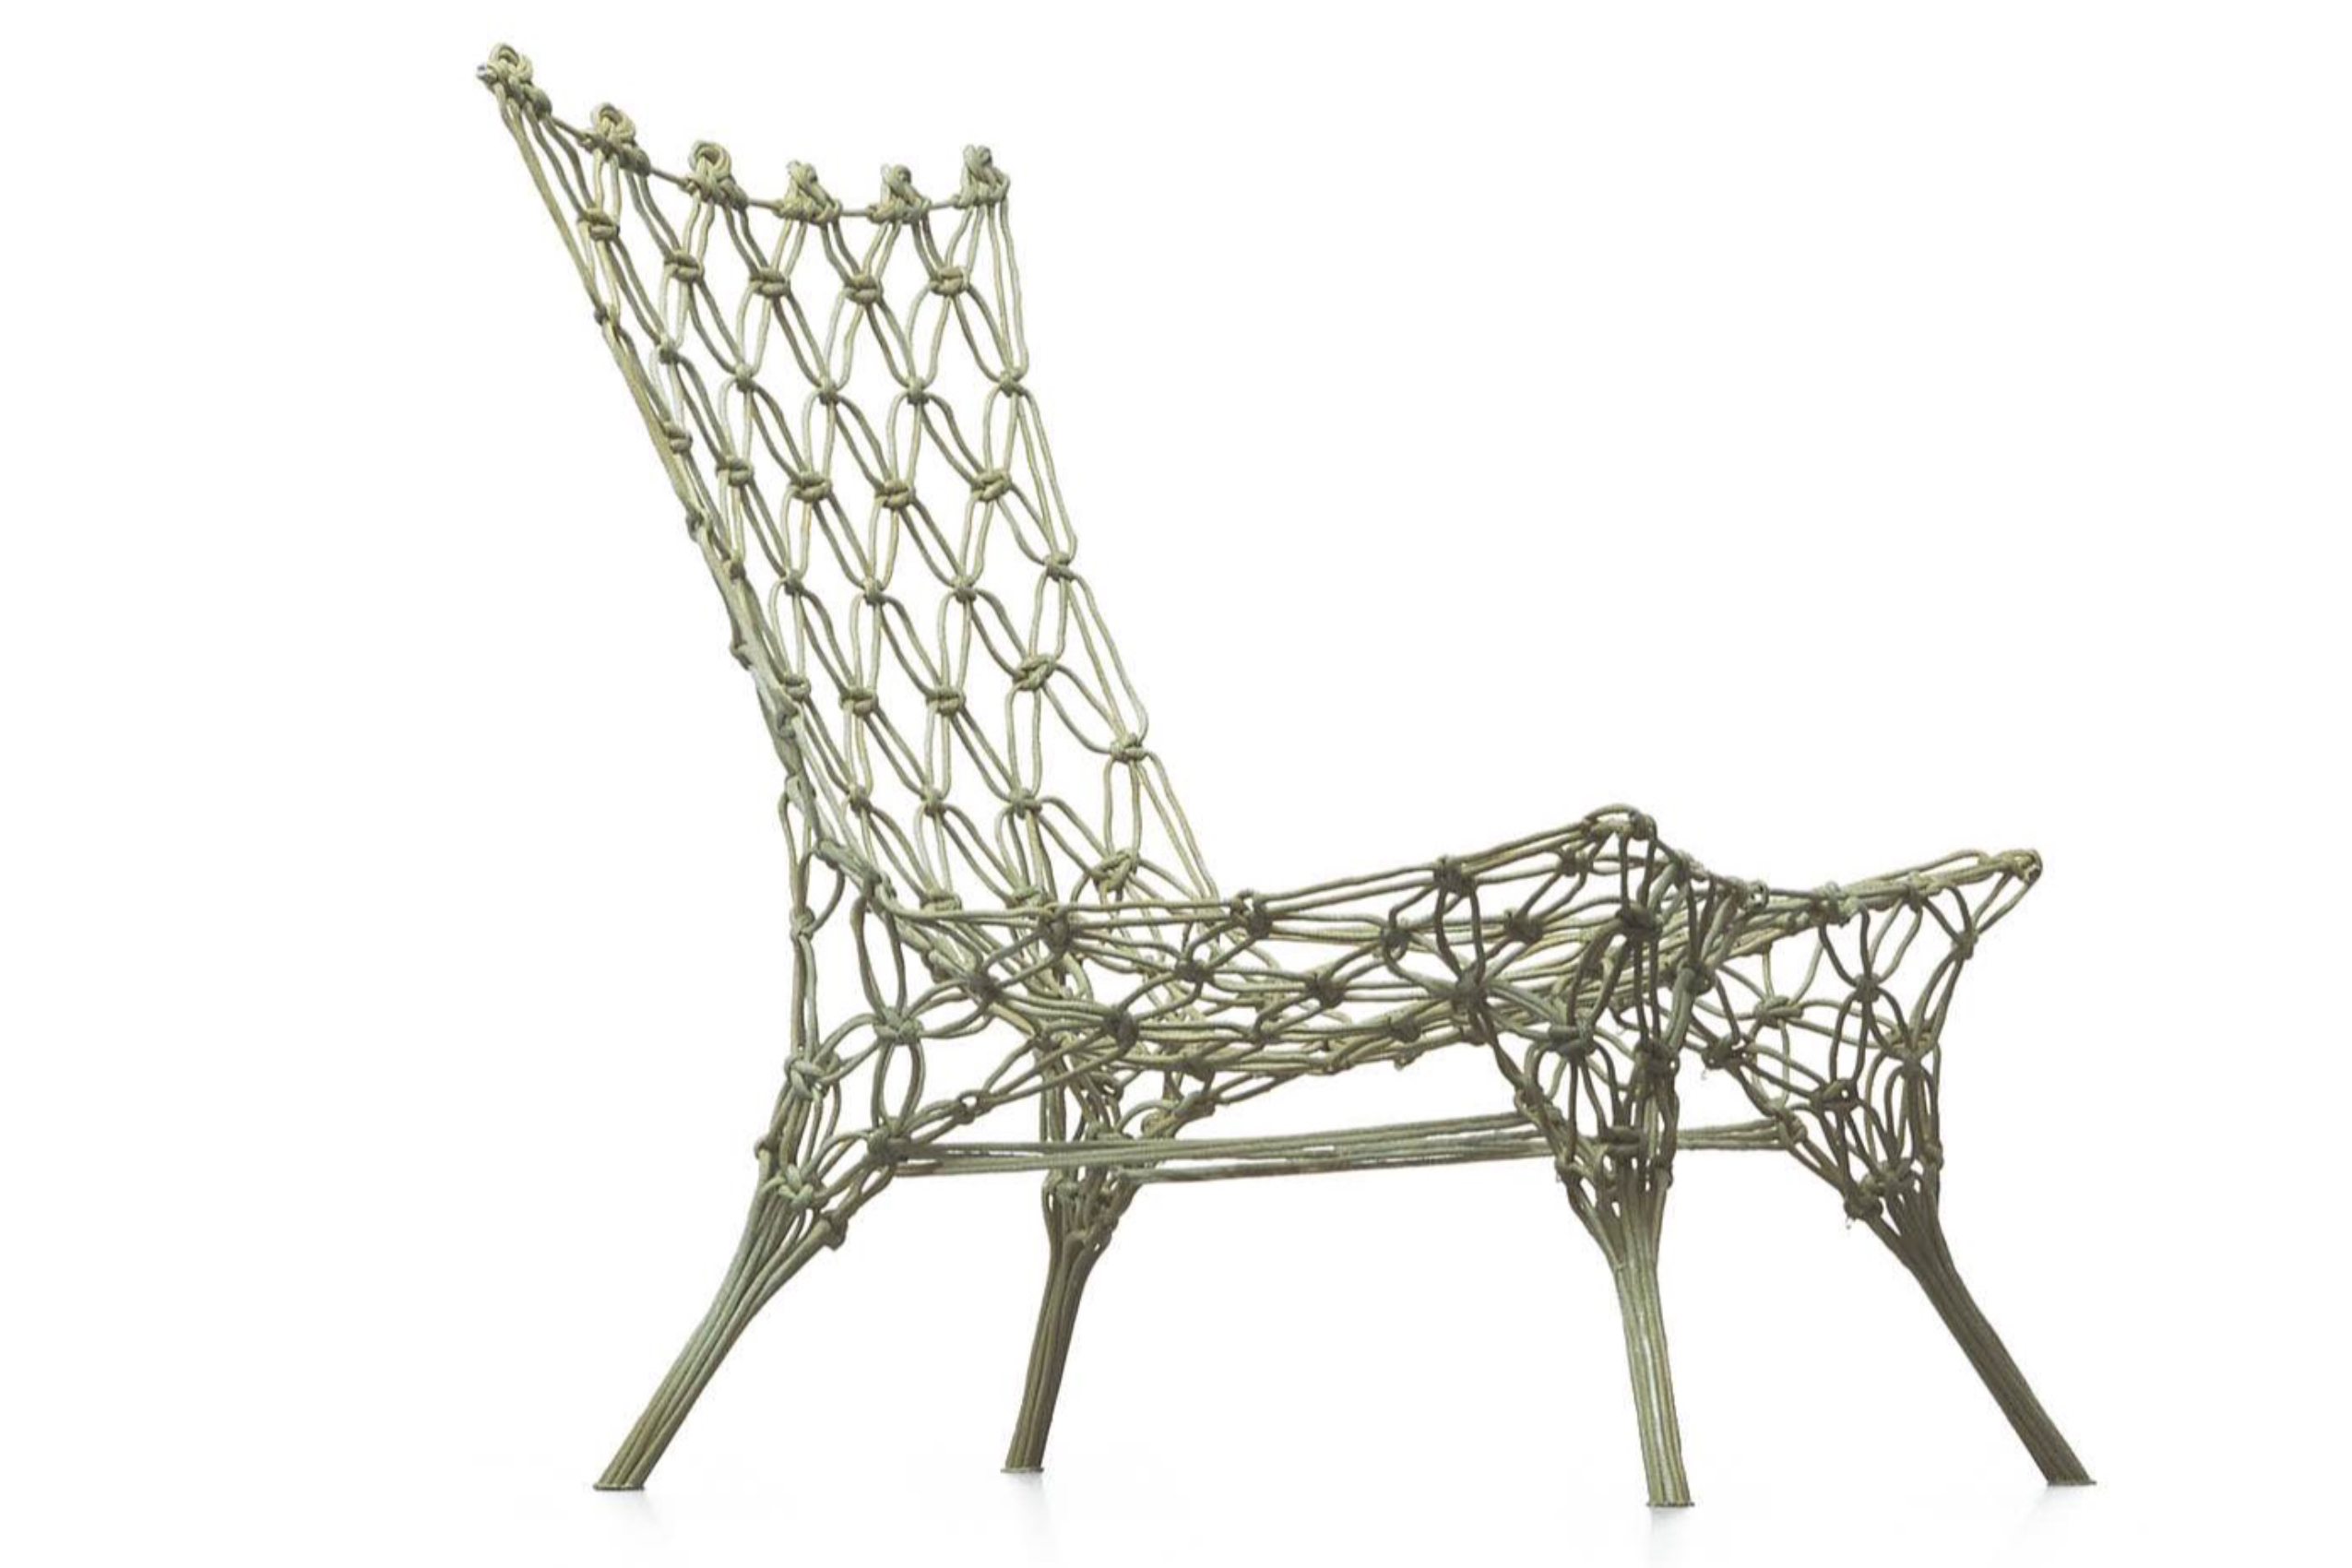 1996 年为荷兰设计品牌 Droog 设计的 Knotted Chair，打开了 Marcel 的大师之路。